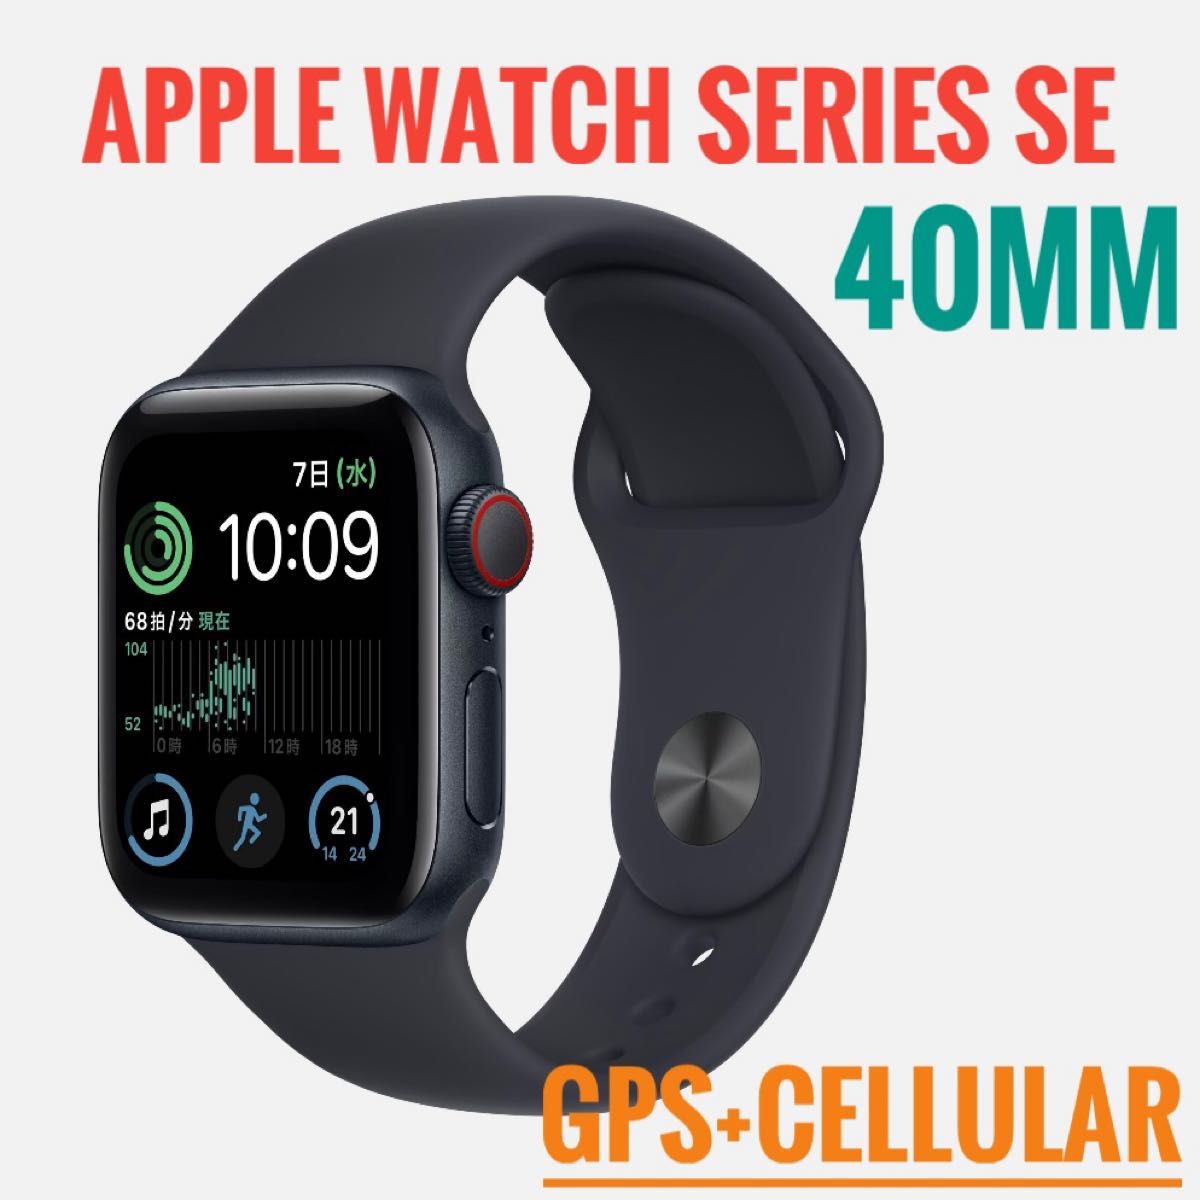 「新品未開封」Apple Watch SE(第2世代) 40mm ミッドナイトアルミニウムケース GPSモデル 